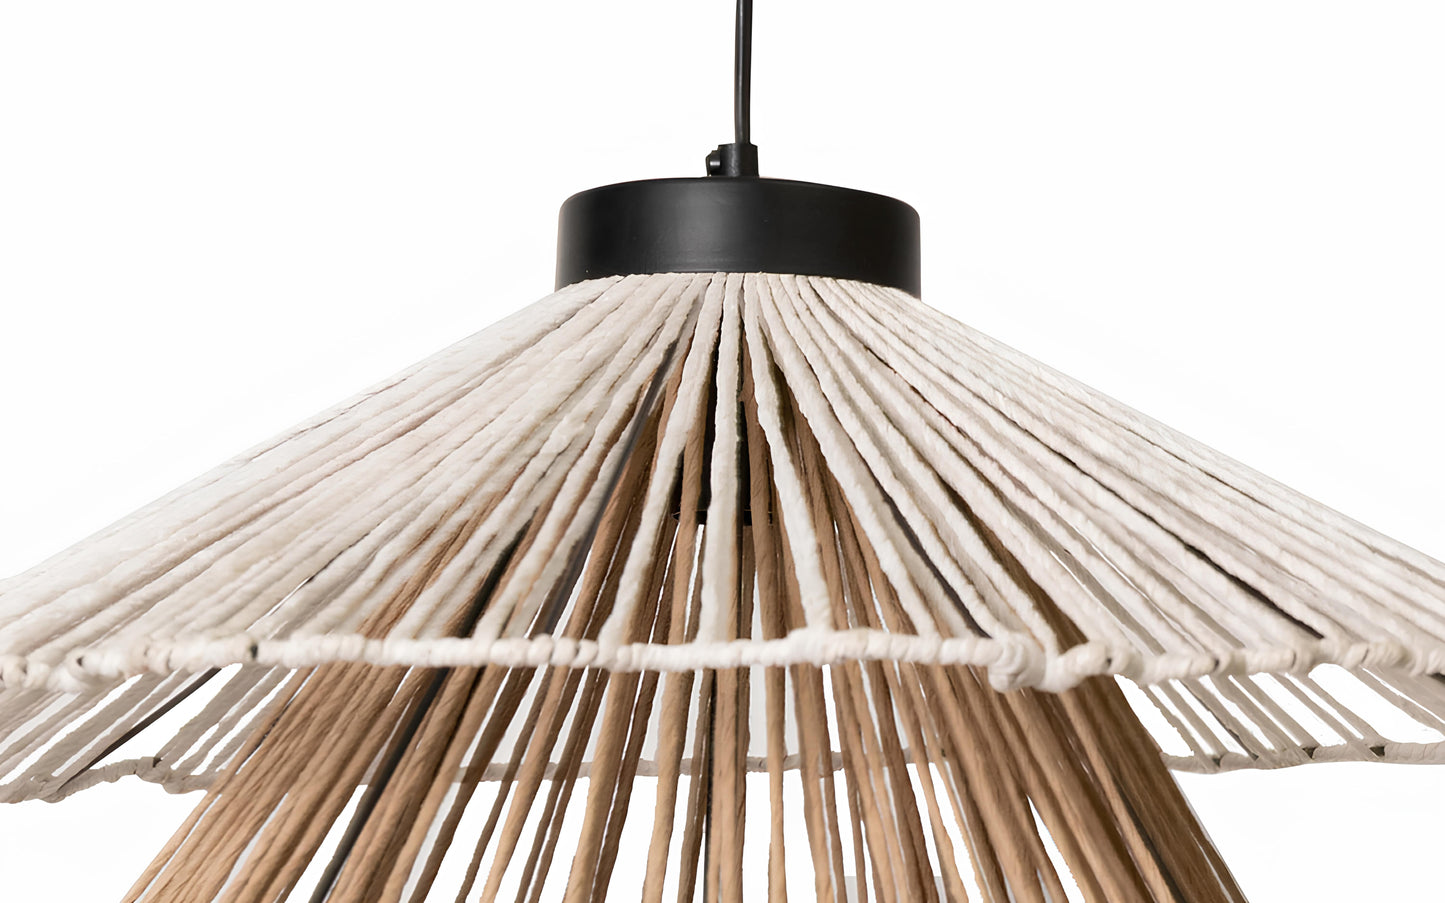 Bamboo Hanging lamp for Living Room | Rattan Pendant light | Cane ceiling light - Alka - Akway